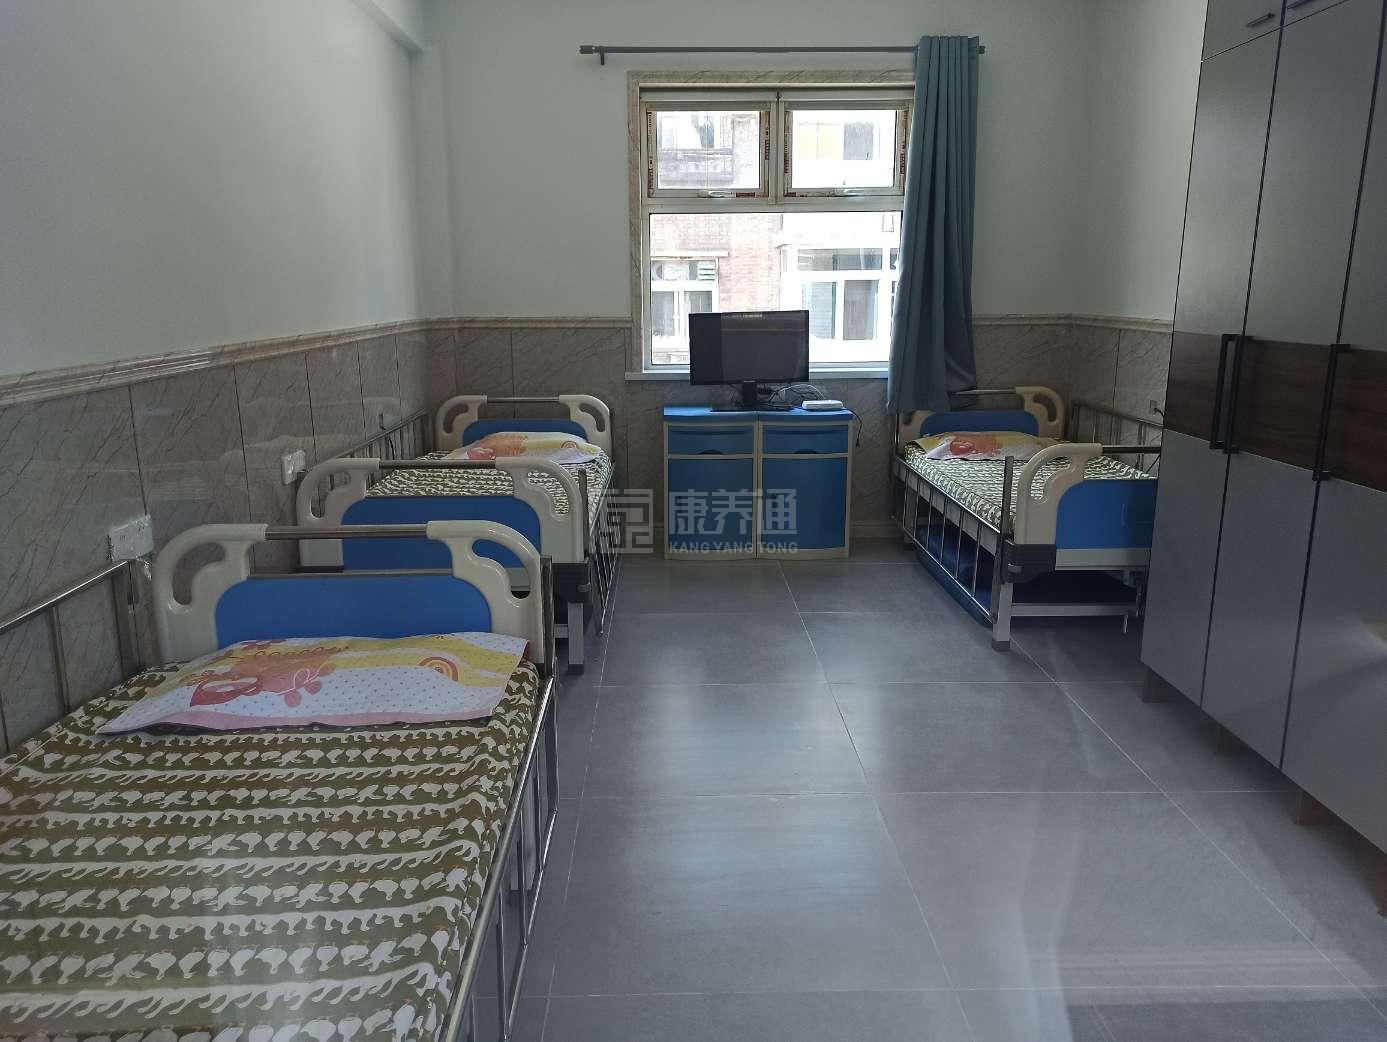 天津市南开区纳德老年人护理院服务项目图6让长者体面而尊严地生活